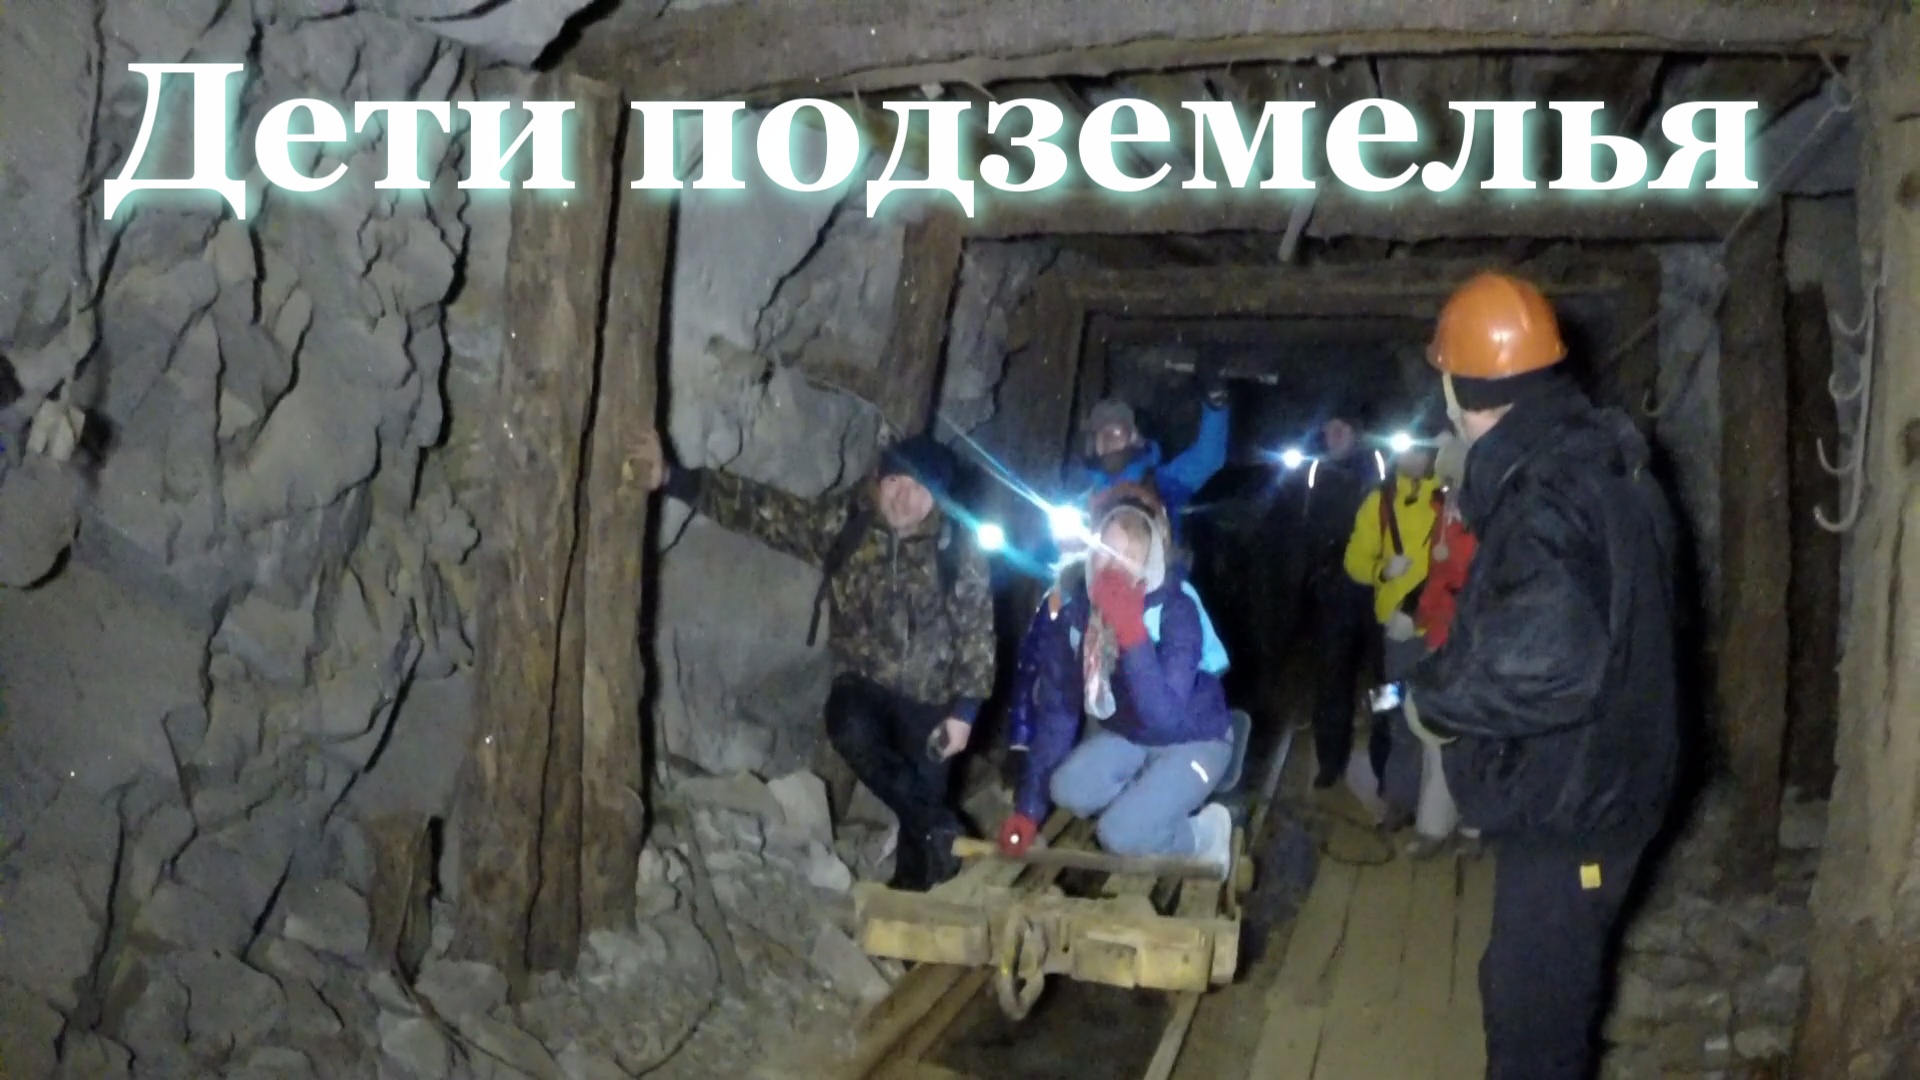 Дети подземелья. В глубокой шахте мы нашли заброшенный город. Заблудились в катакомбах...